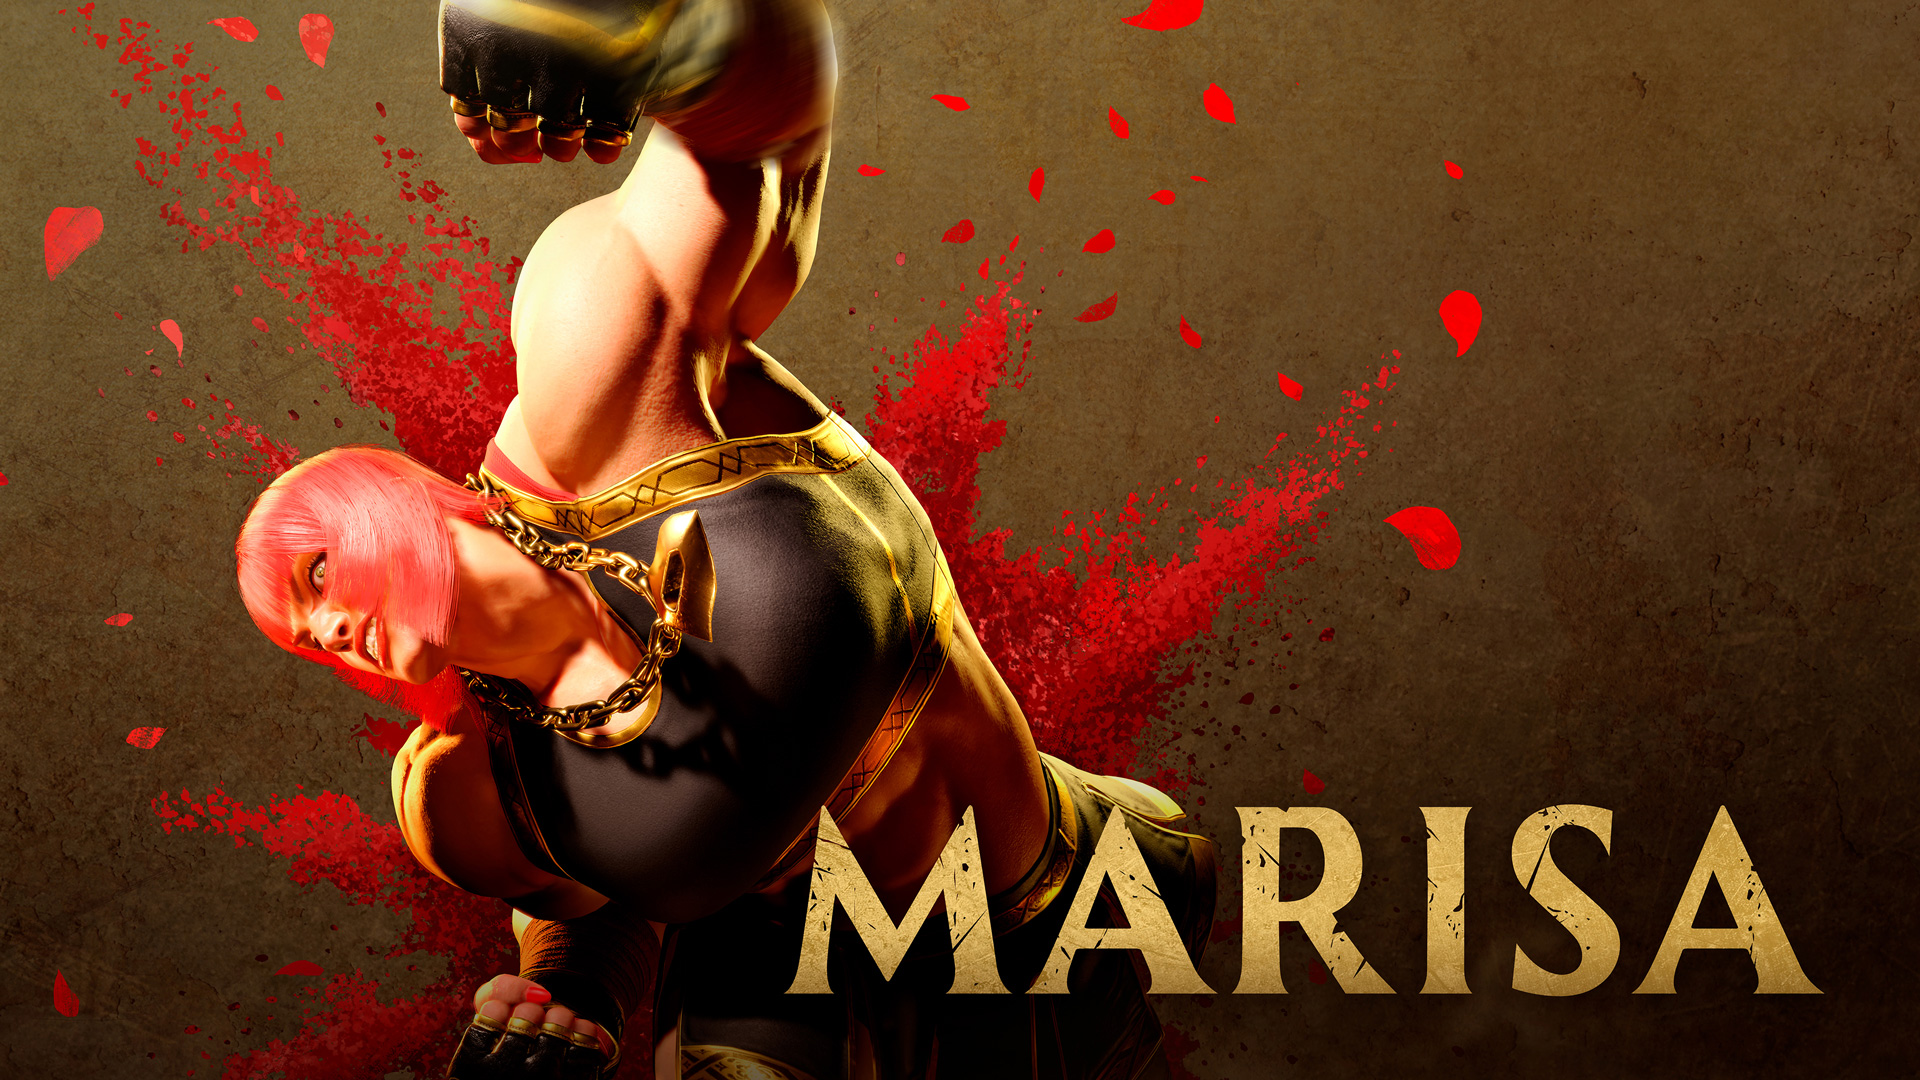 《街头霸王6》新角色玛丽莎视频演示：强壮的女斗士!